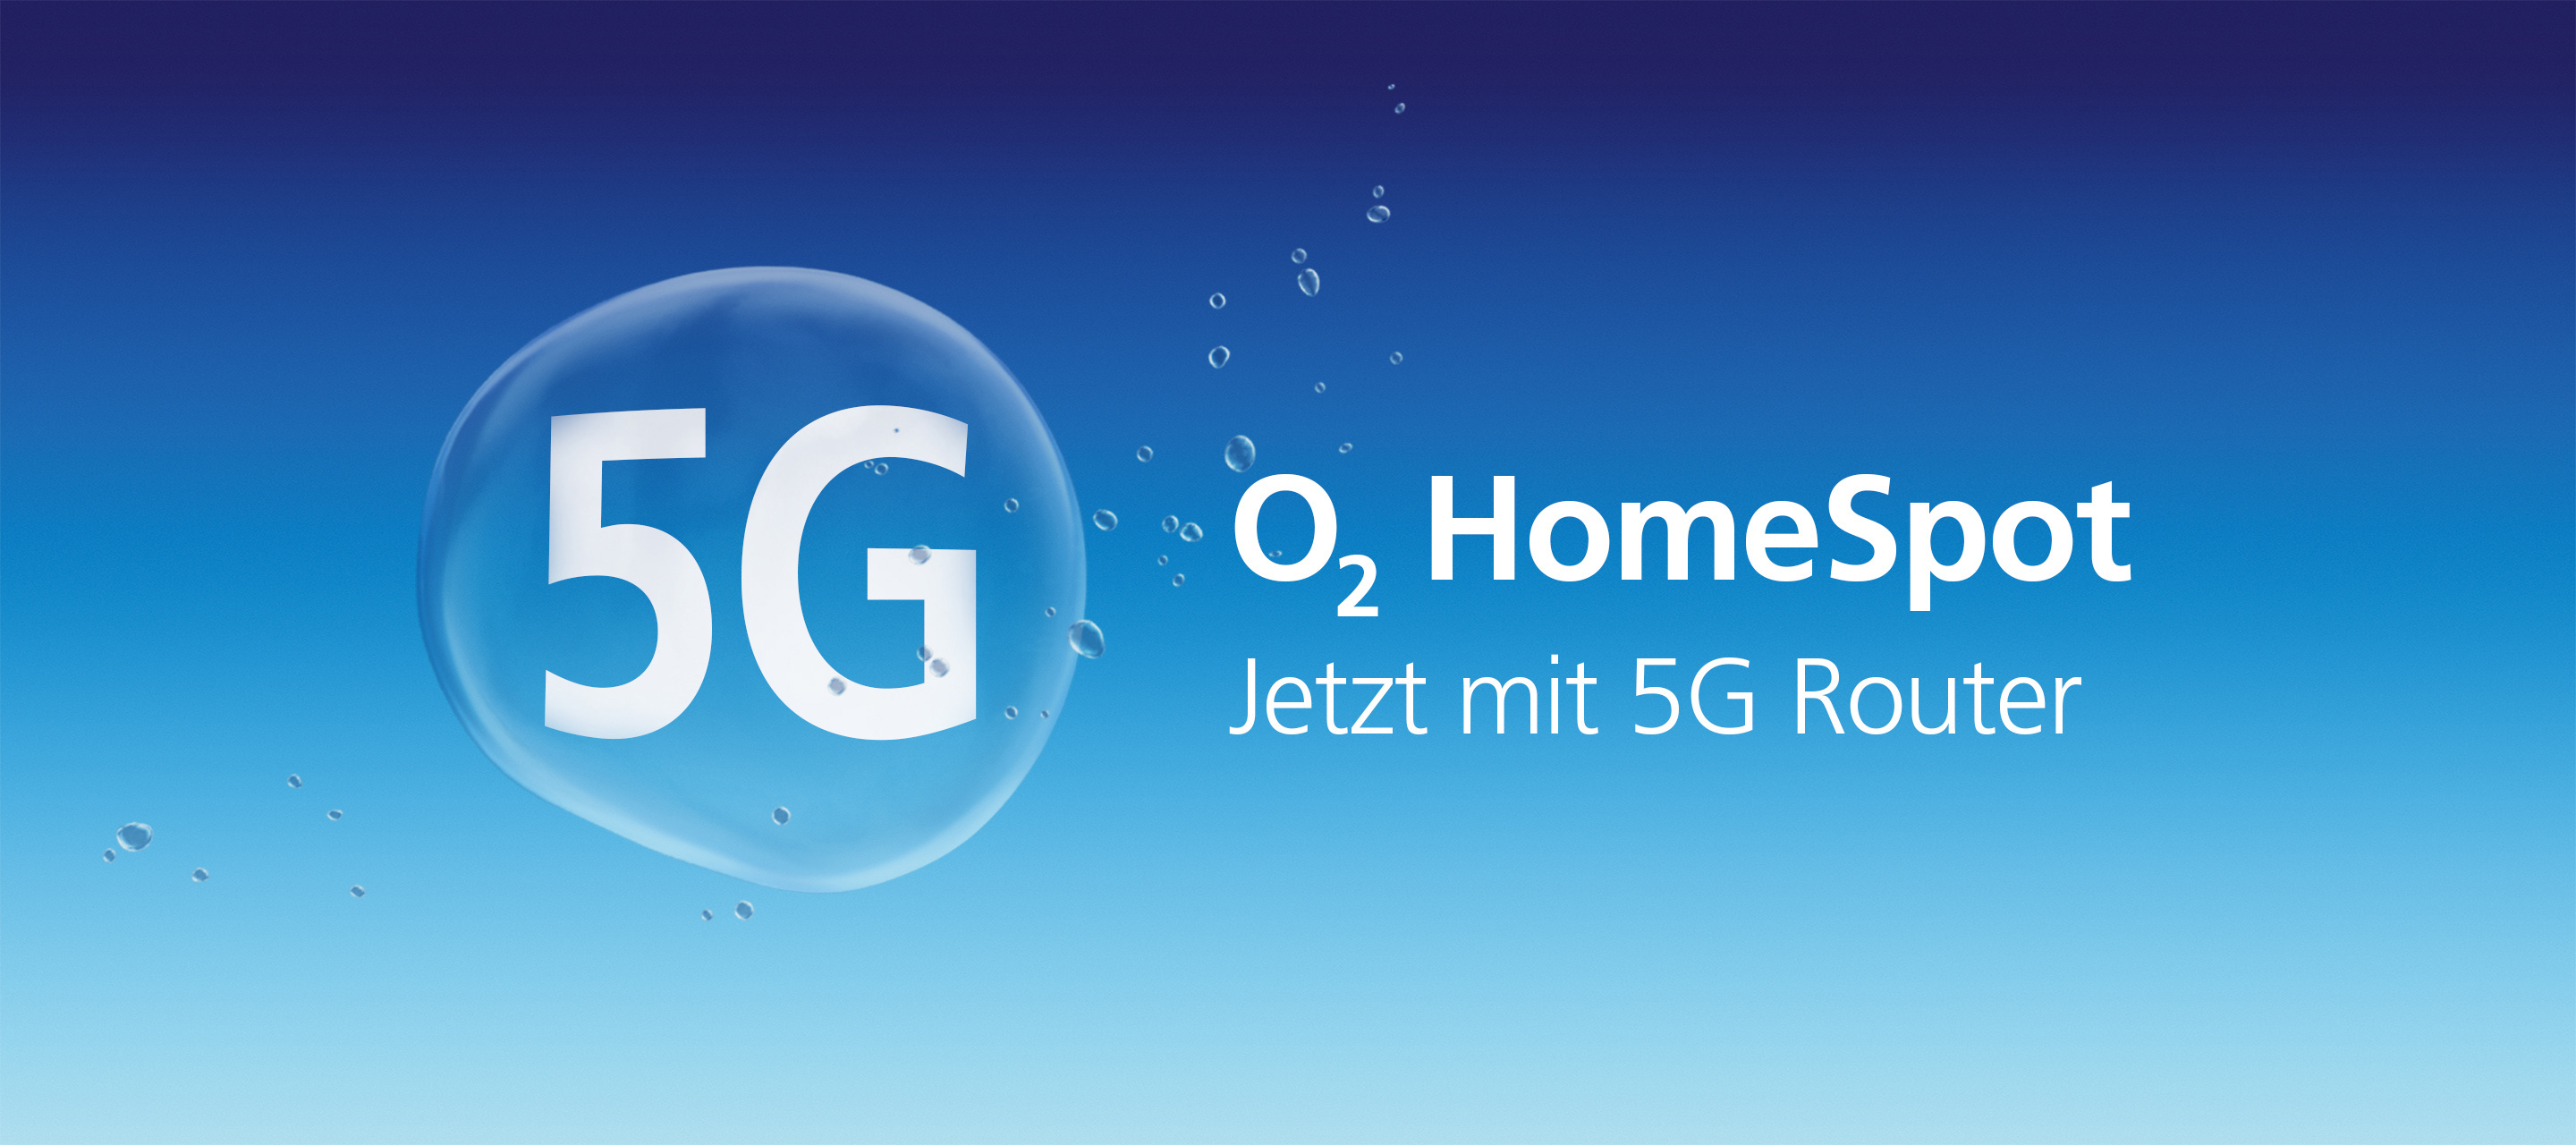 O₂ HomeSpot - Der O₂ my Data Spot Unlimited bekommt ein Update